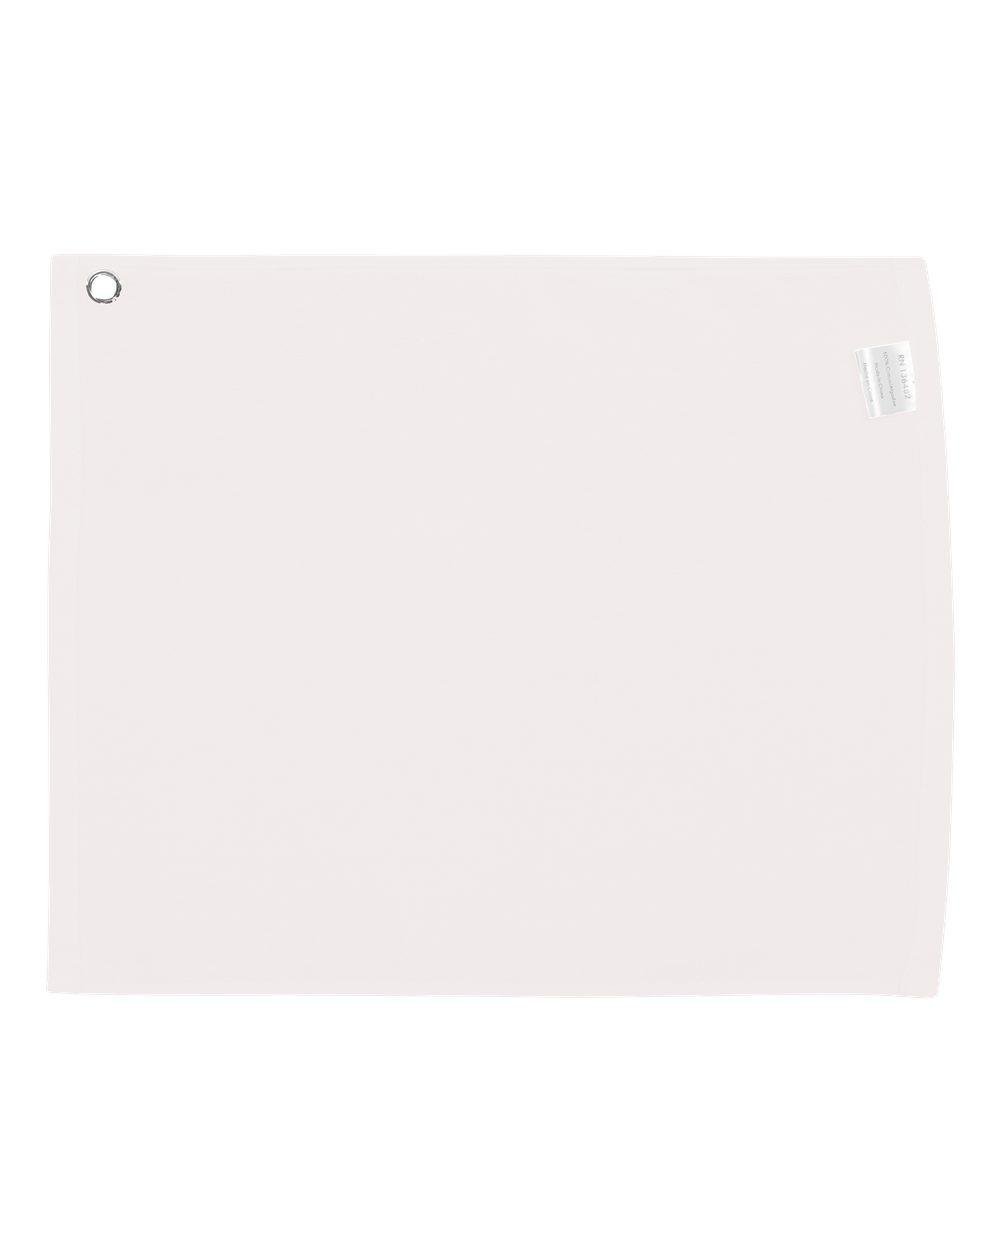  [AUSTRALIA] - Carmel Cotton Velour Towel (White) (All)